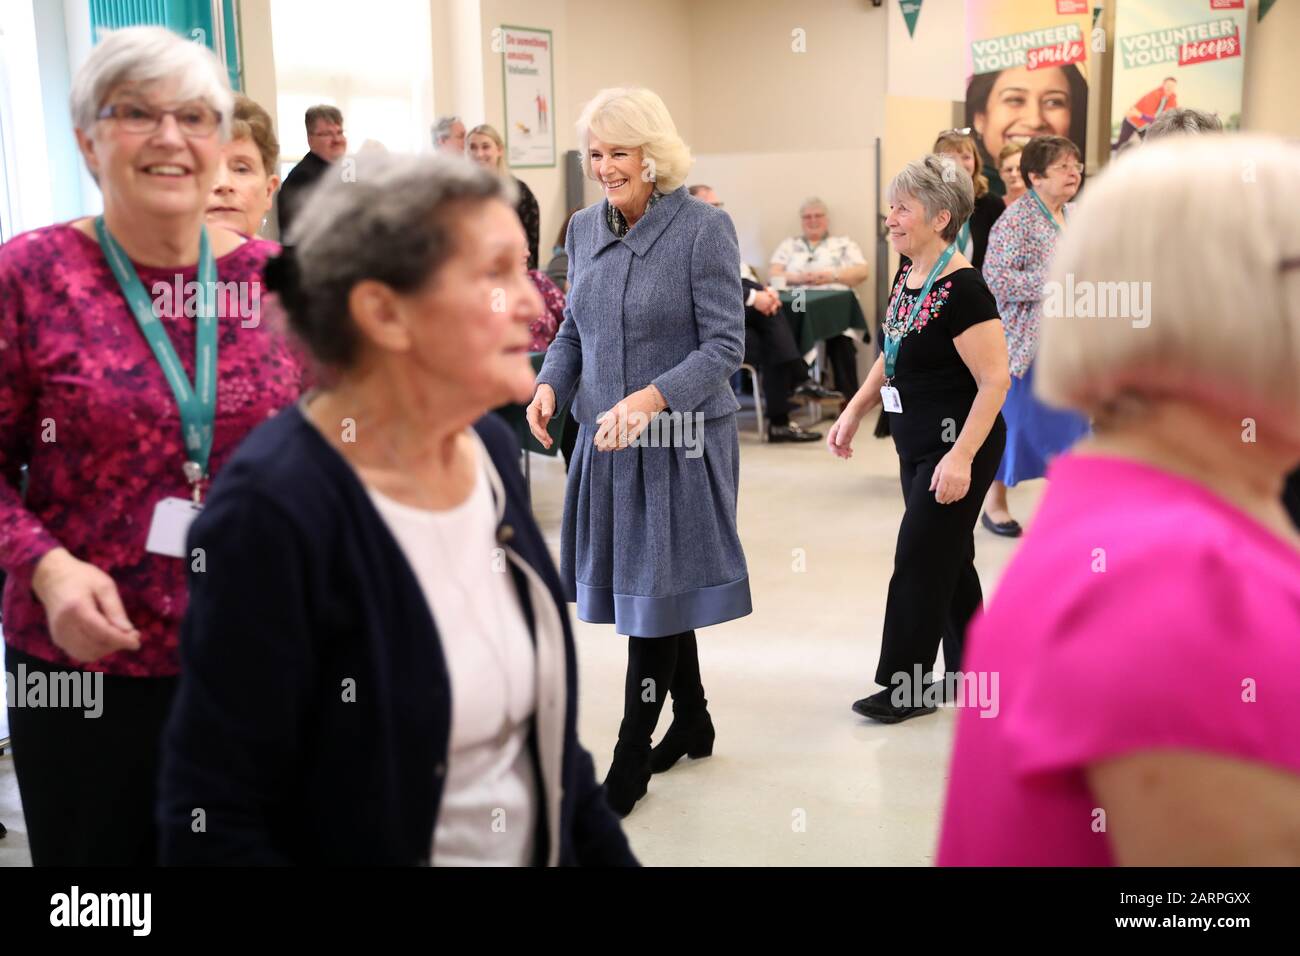 La Duchessa di Cornovaglia, presidente del Royal Volontary Service, partecipa a una lezione di danza guidata da volontari durante la sua visita al RVS Cornhill Centre di Banbury, nell'Oxfordshire. Foto PA. Data Immagine: Mercoledì 29 Gennaio 2020. Il credito fotografico dovrebbe leggere: Chris Jackson/PA Filo Foto Stock